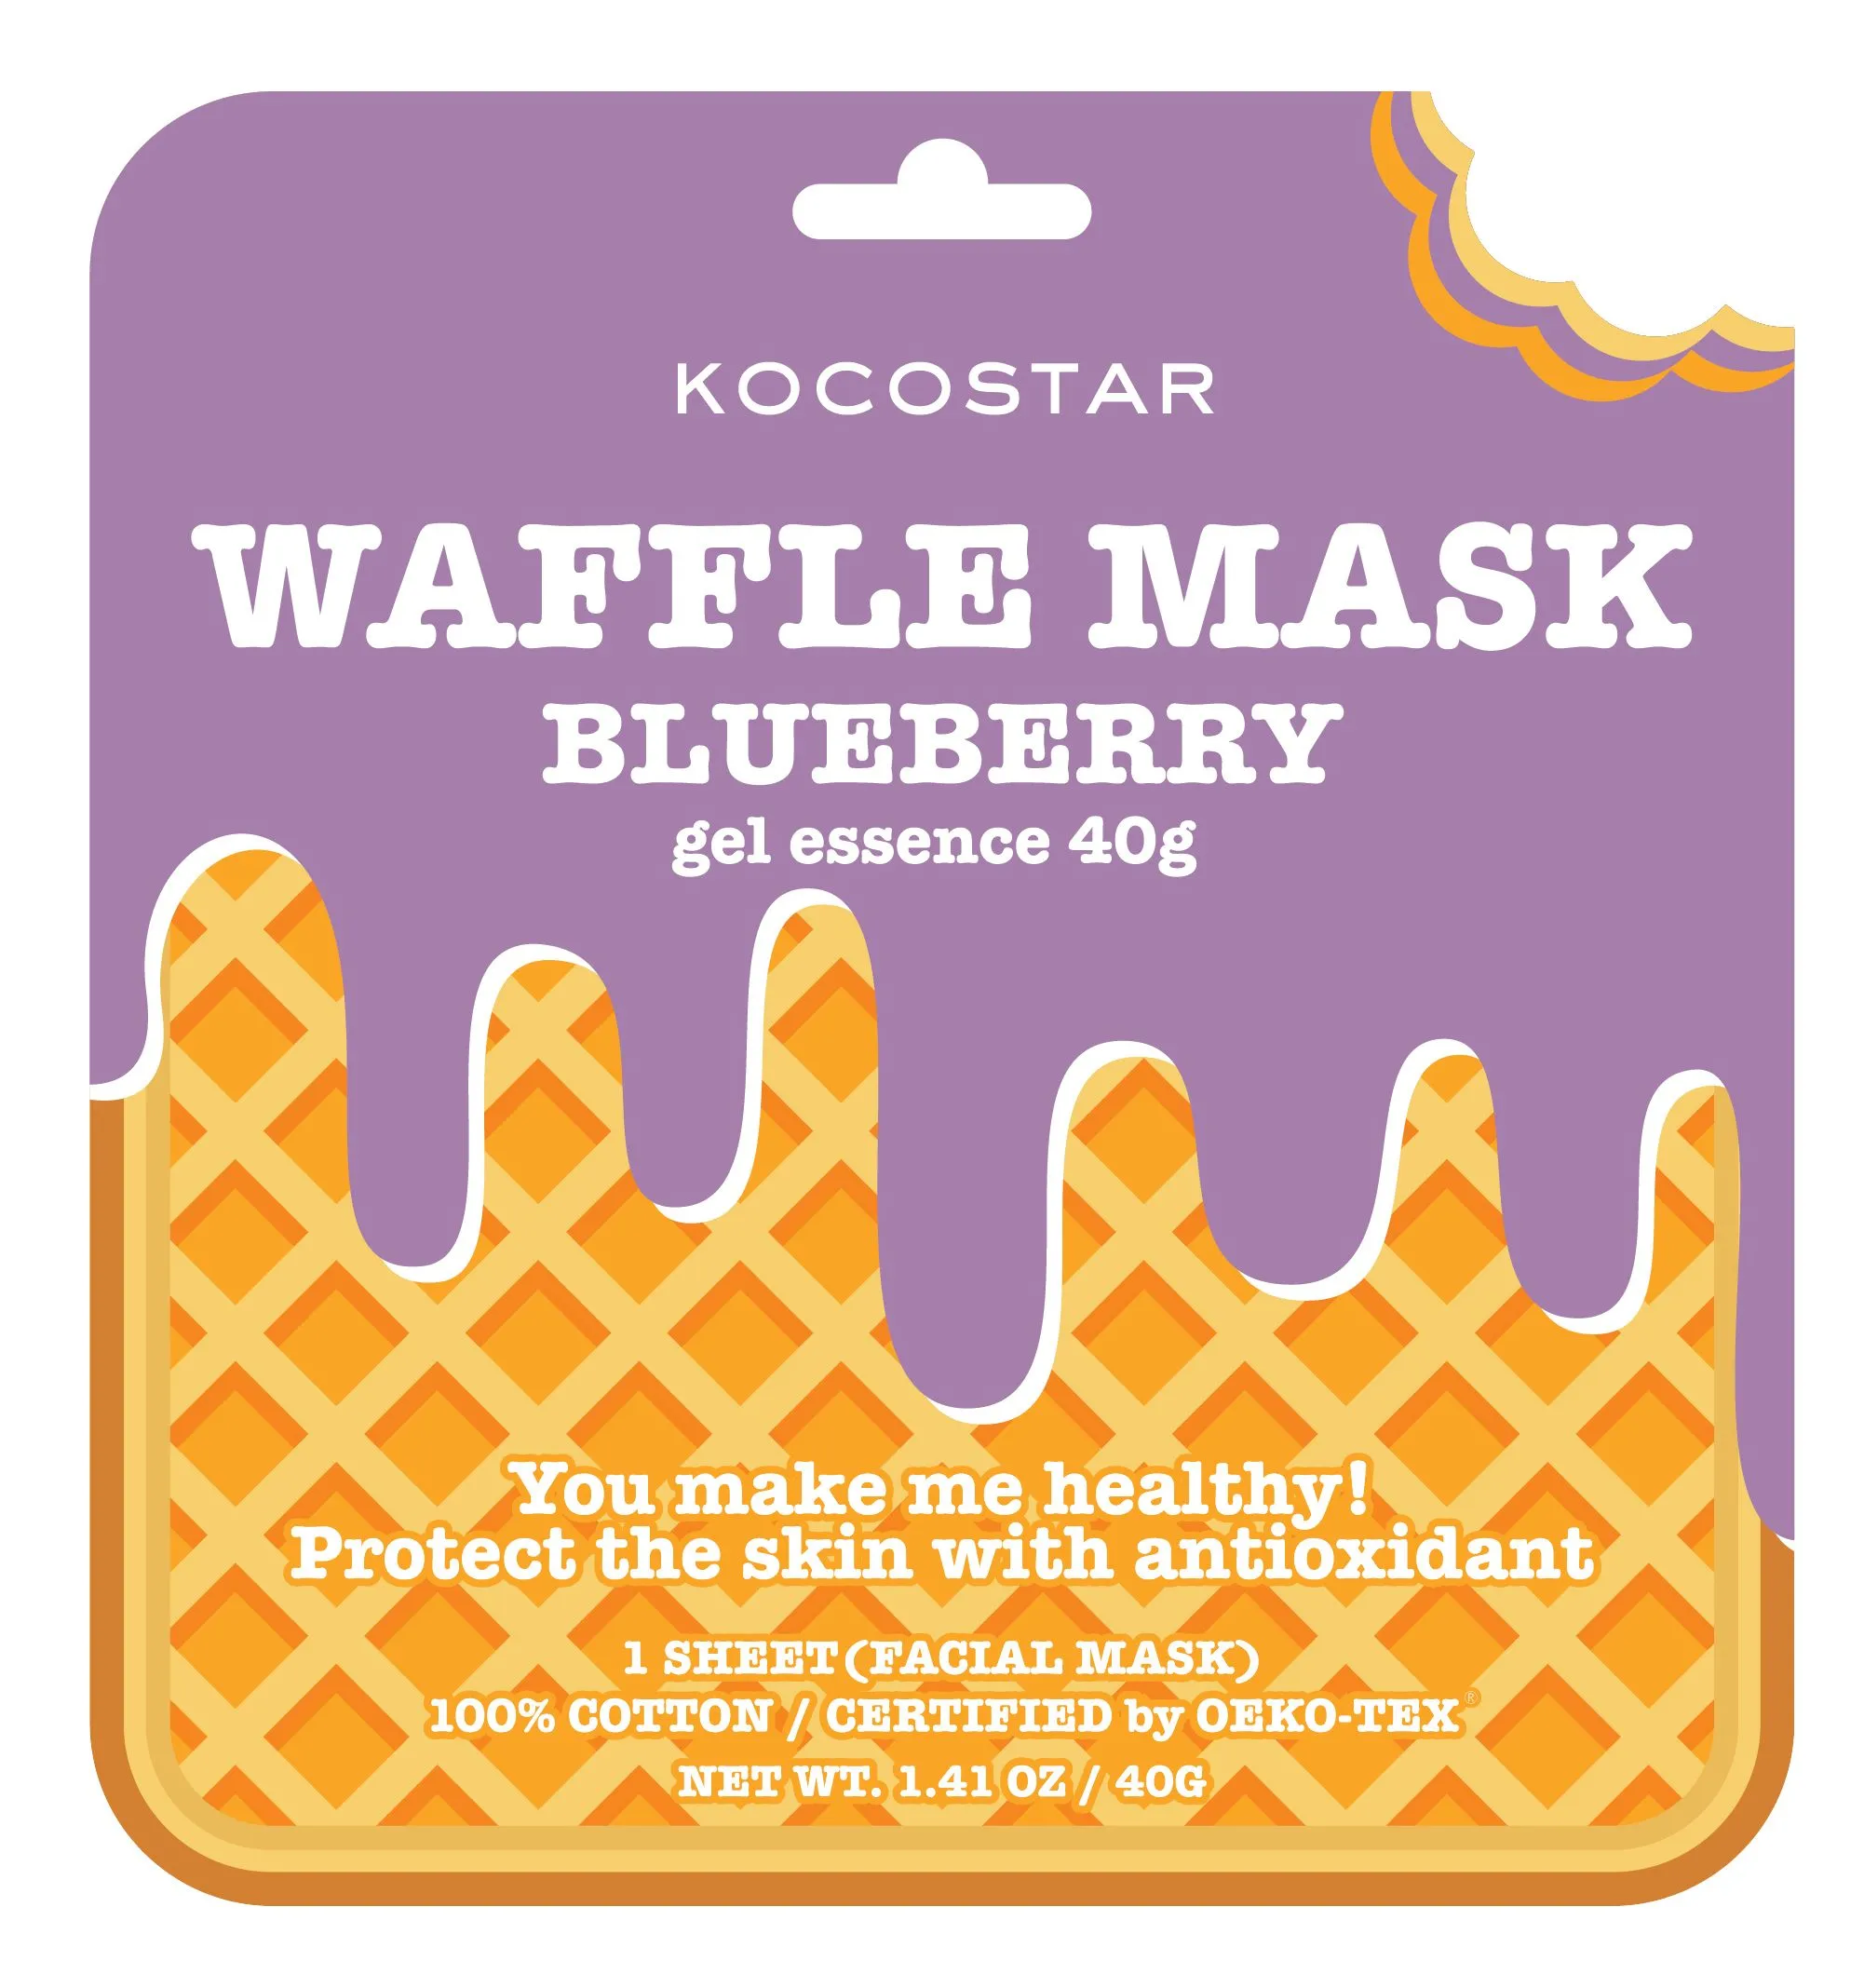 Kocostar Waffle Mask Blueberry 40 g / 1 sheet